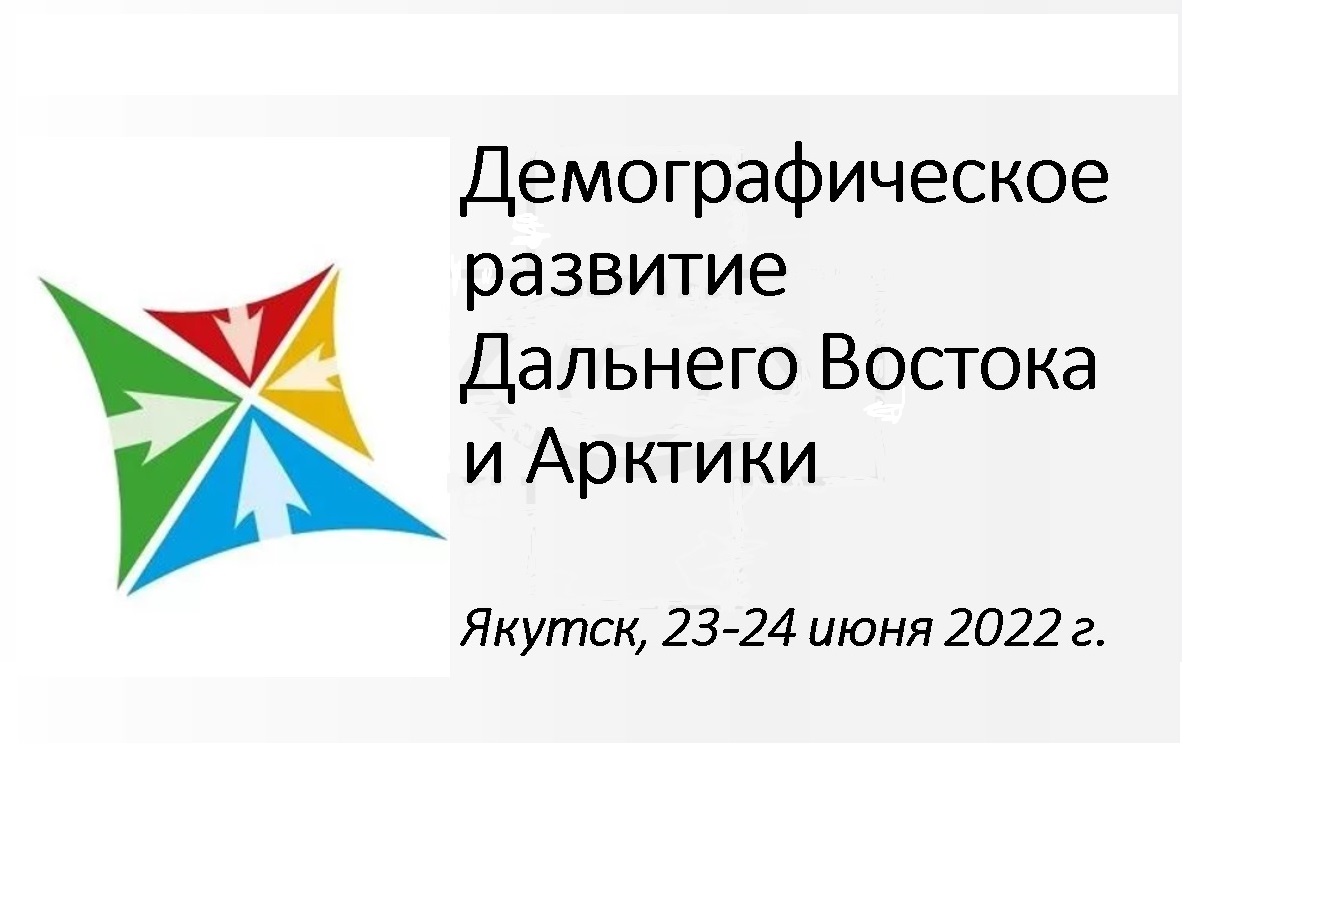 В Якутске состоится Всероссийская конференция «Демографическое развитие Дальнего Востока и Арктики»